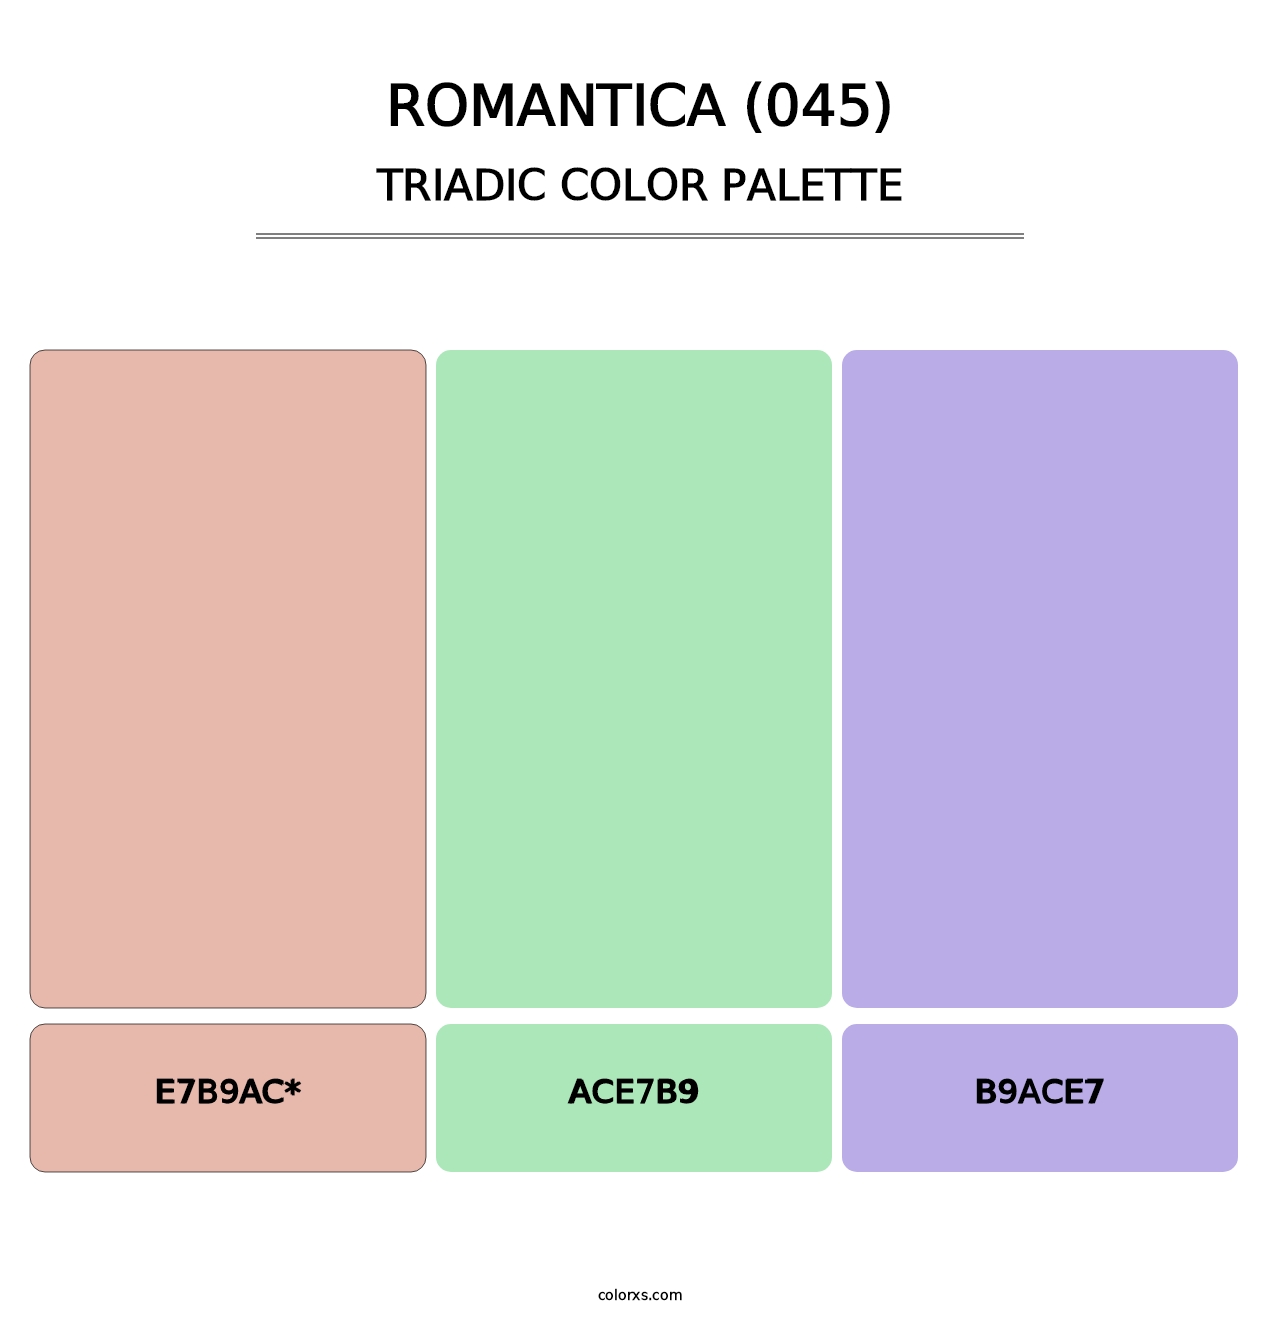 Romantica (045) - Triadic Color Palette